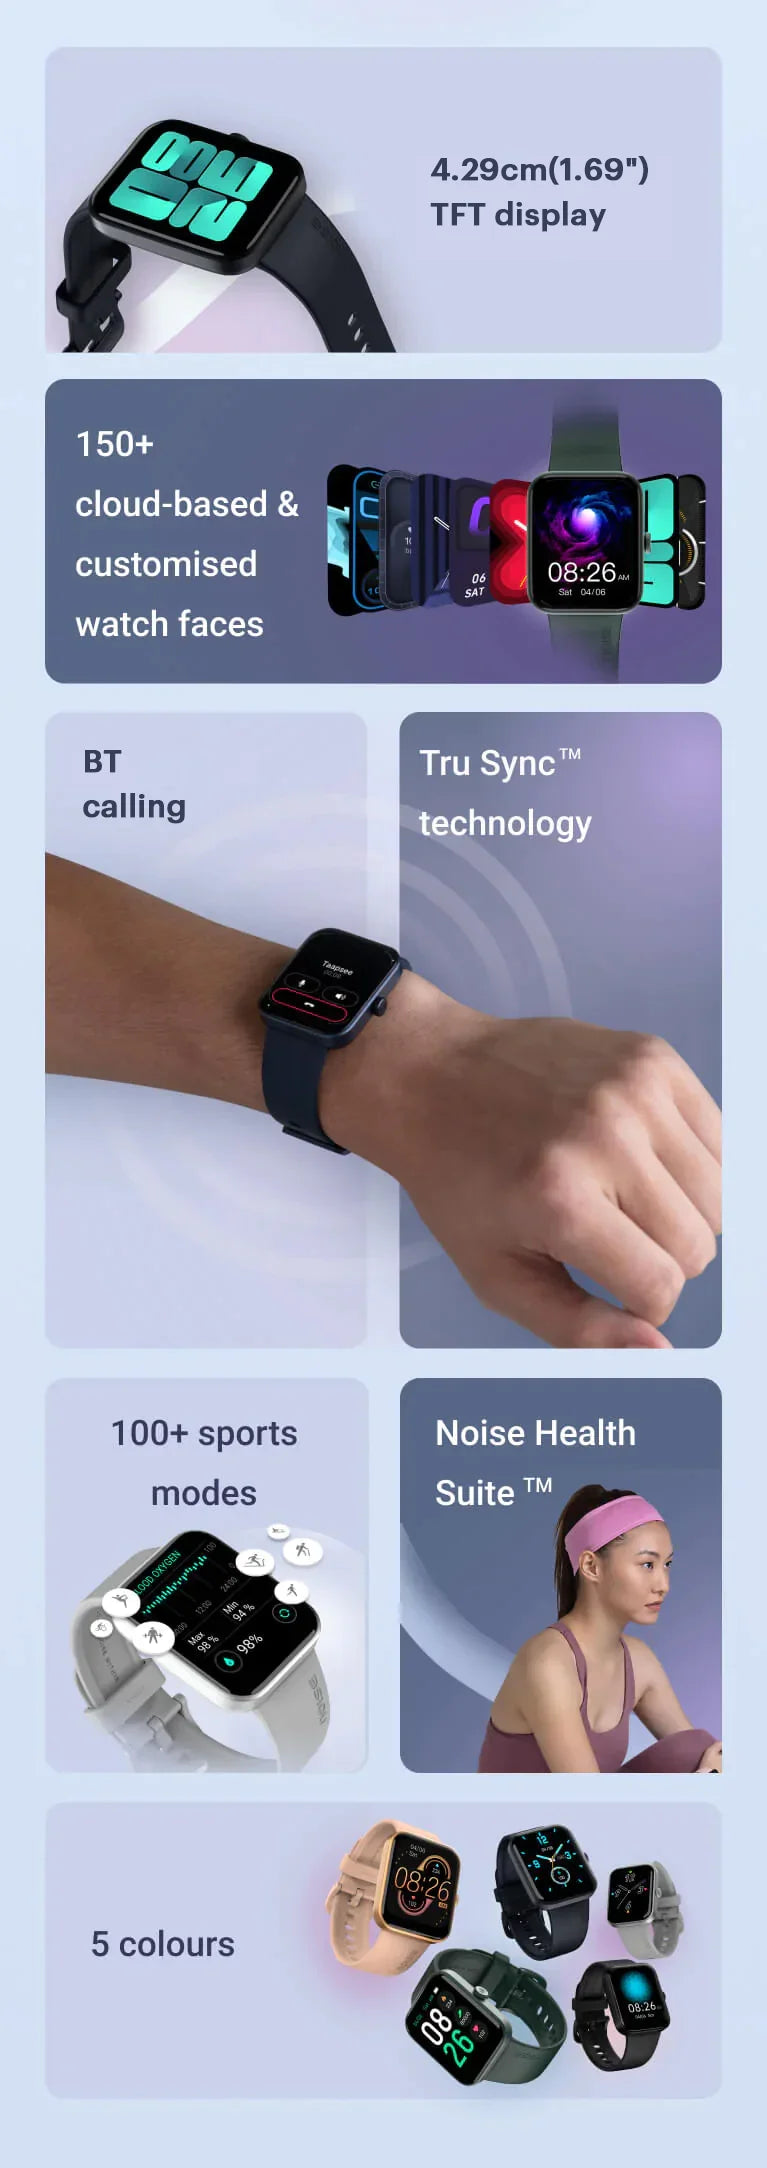 Noise ColorFit Pulse Go Buzz Smartwatch with BT Calling, 1.69